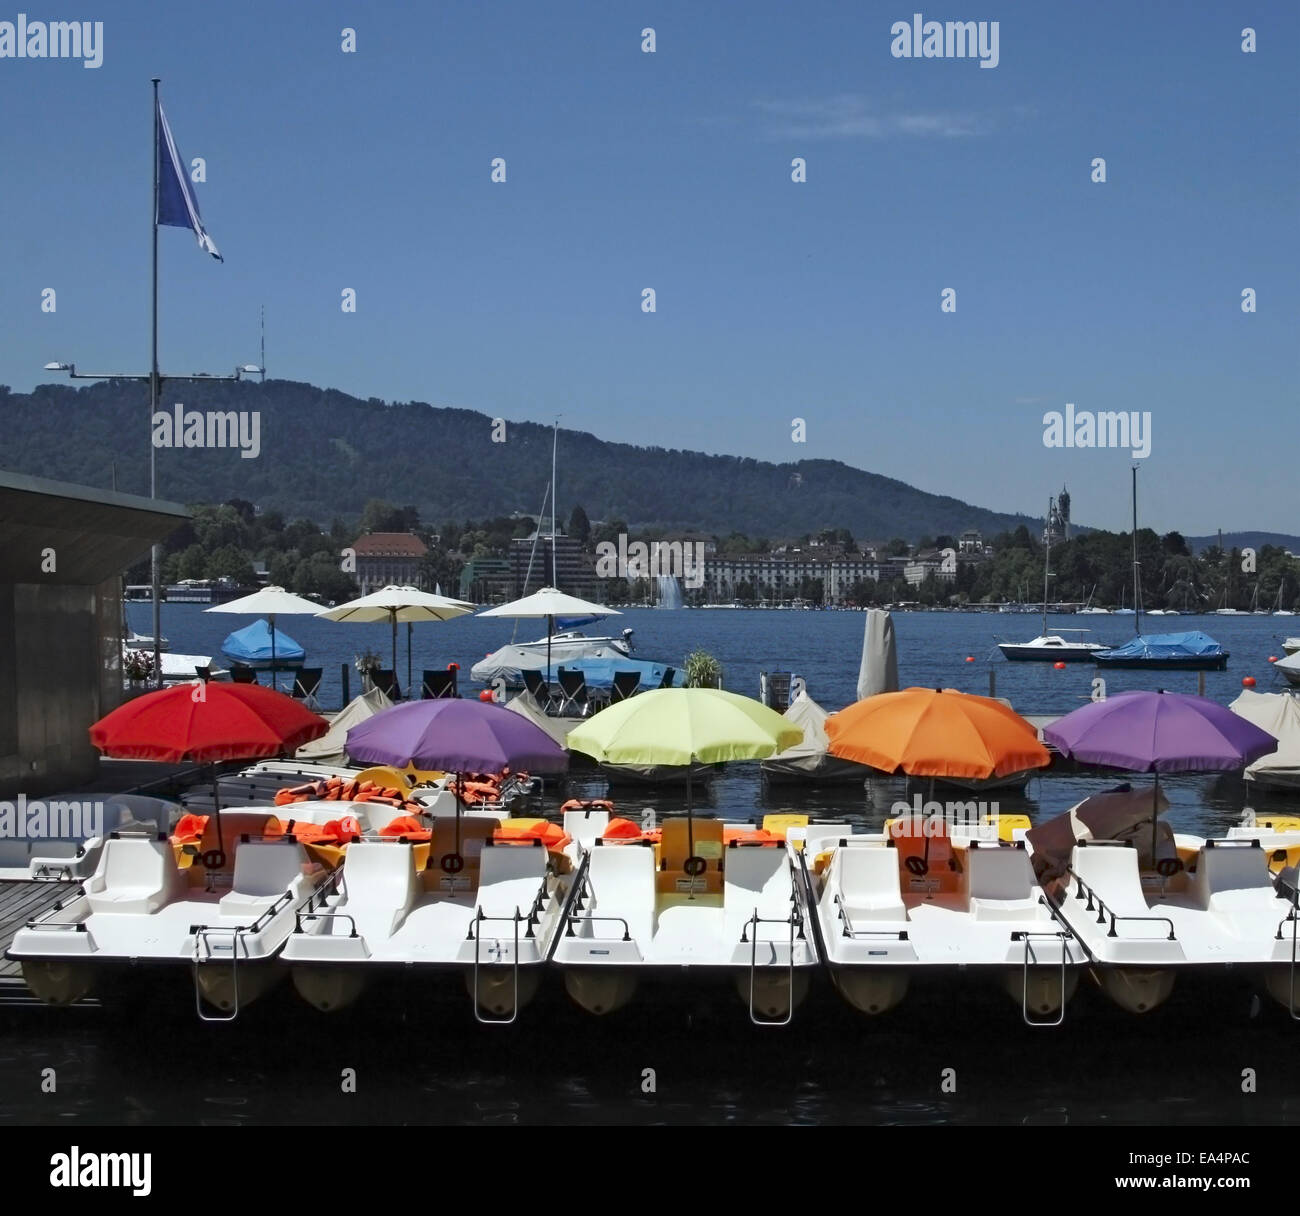 Paddelboote mit Sonnenschirmen in verschiedenen Farben am Zürichsee, Schweiz Stockfoto